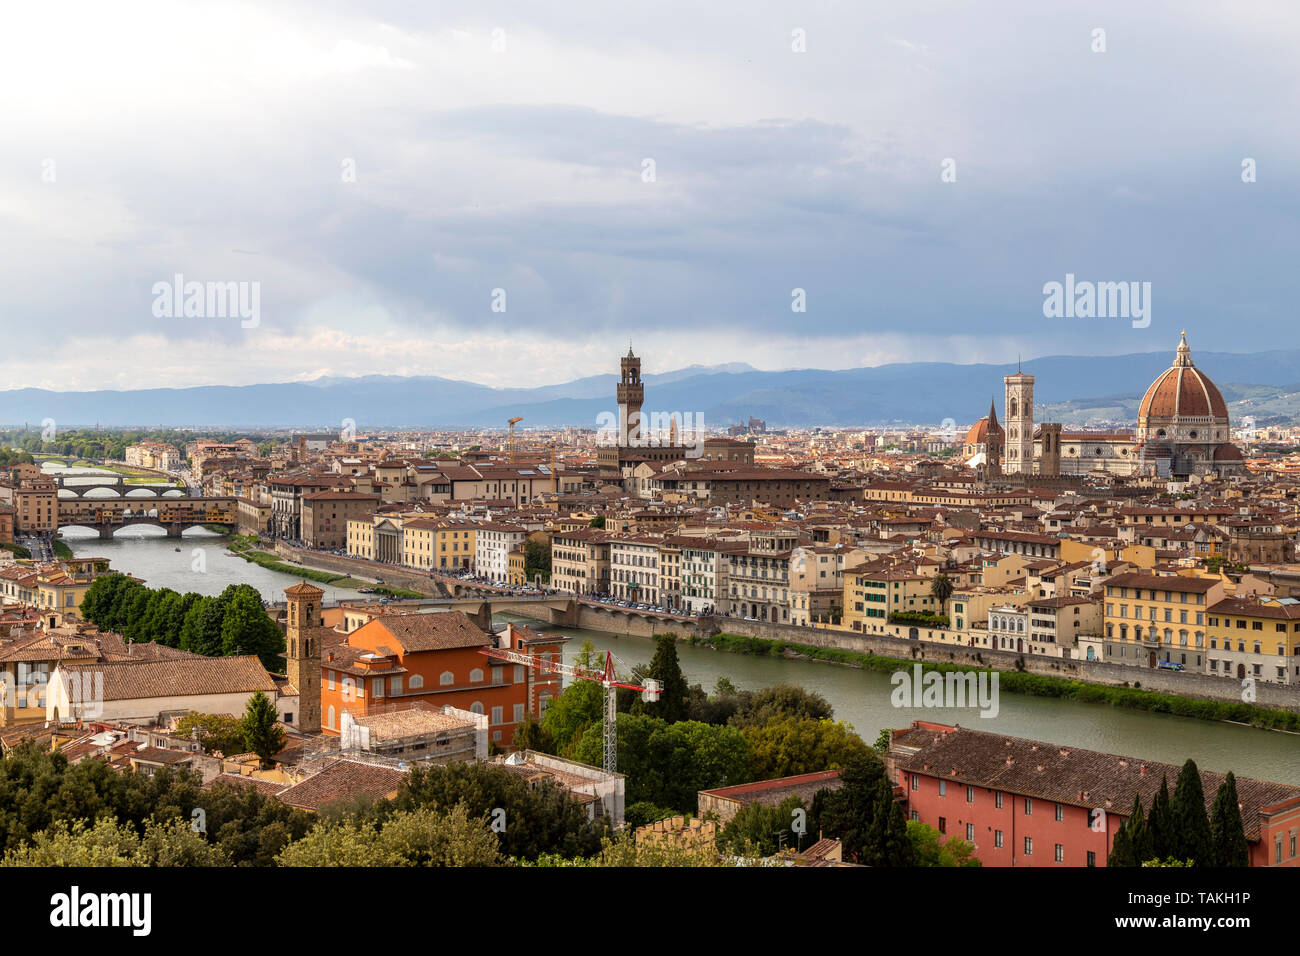 Vue sur le centre historique de Florence depuis le Piazzale Michelangelo, où vous pouvez voir la cathédrale de Santa Maria del Fiore, le vieux palais et vieux bridg Banque D'Images